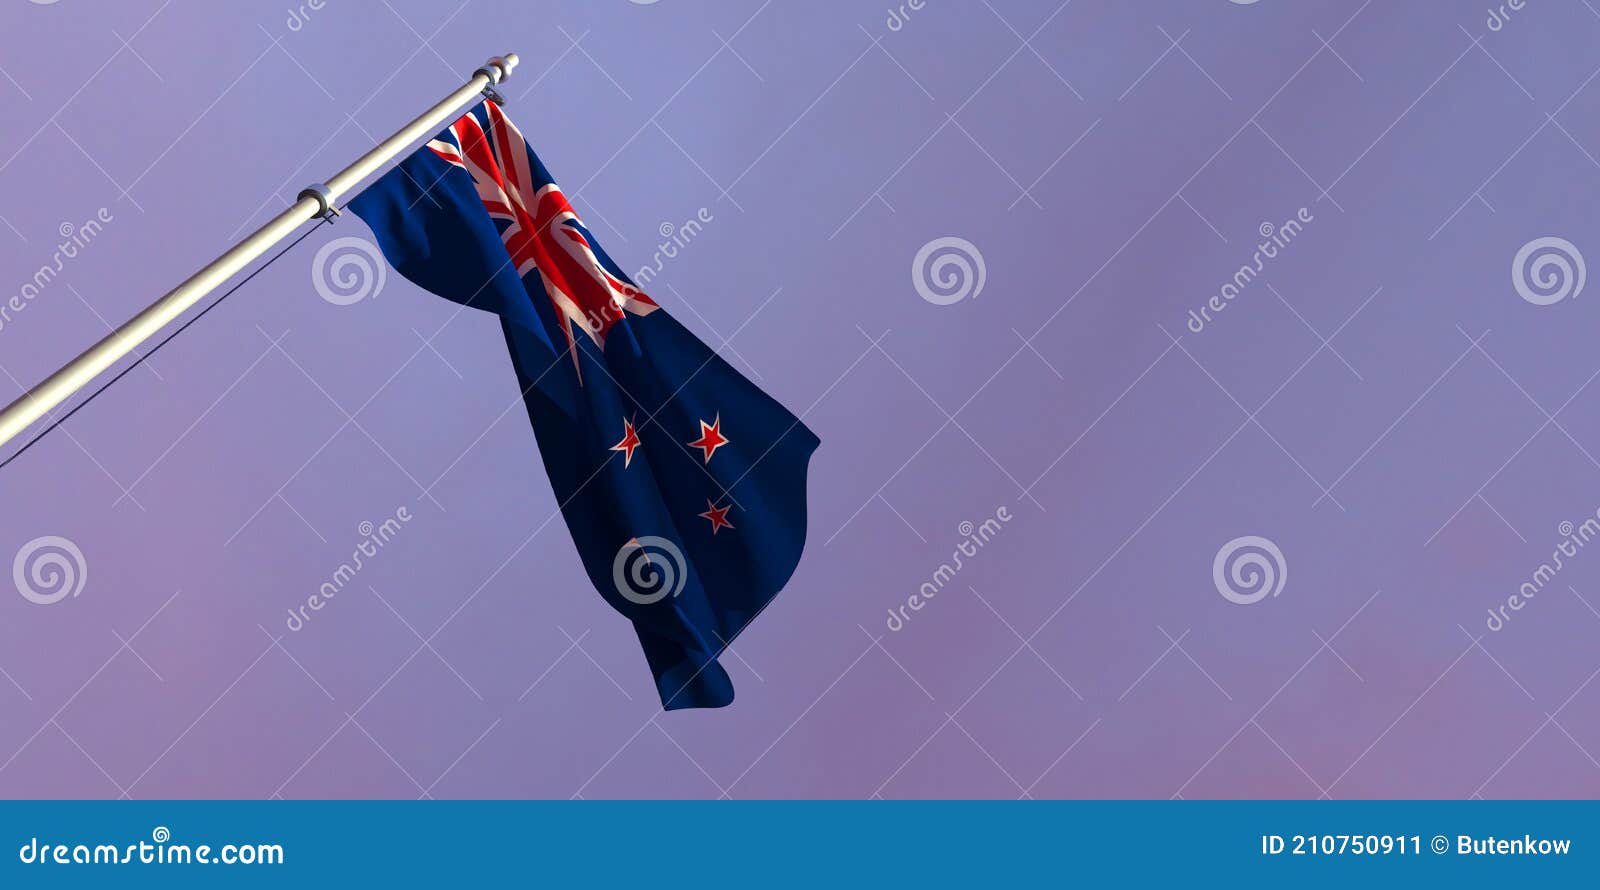 【国家标志】新西兰国旗 - 哔哩哔哩